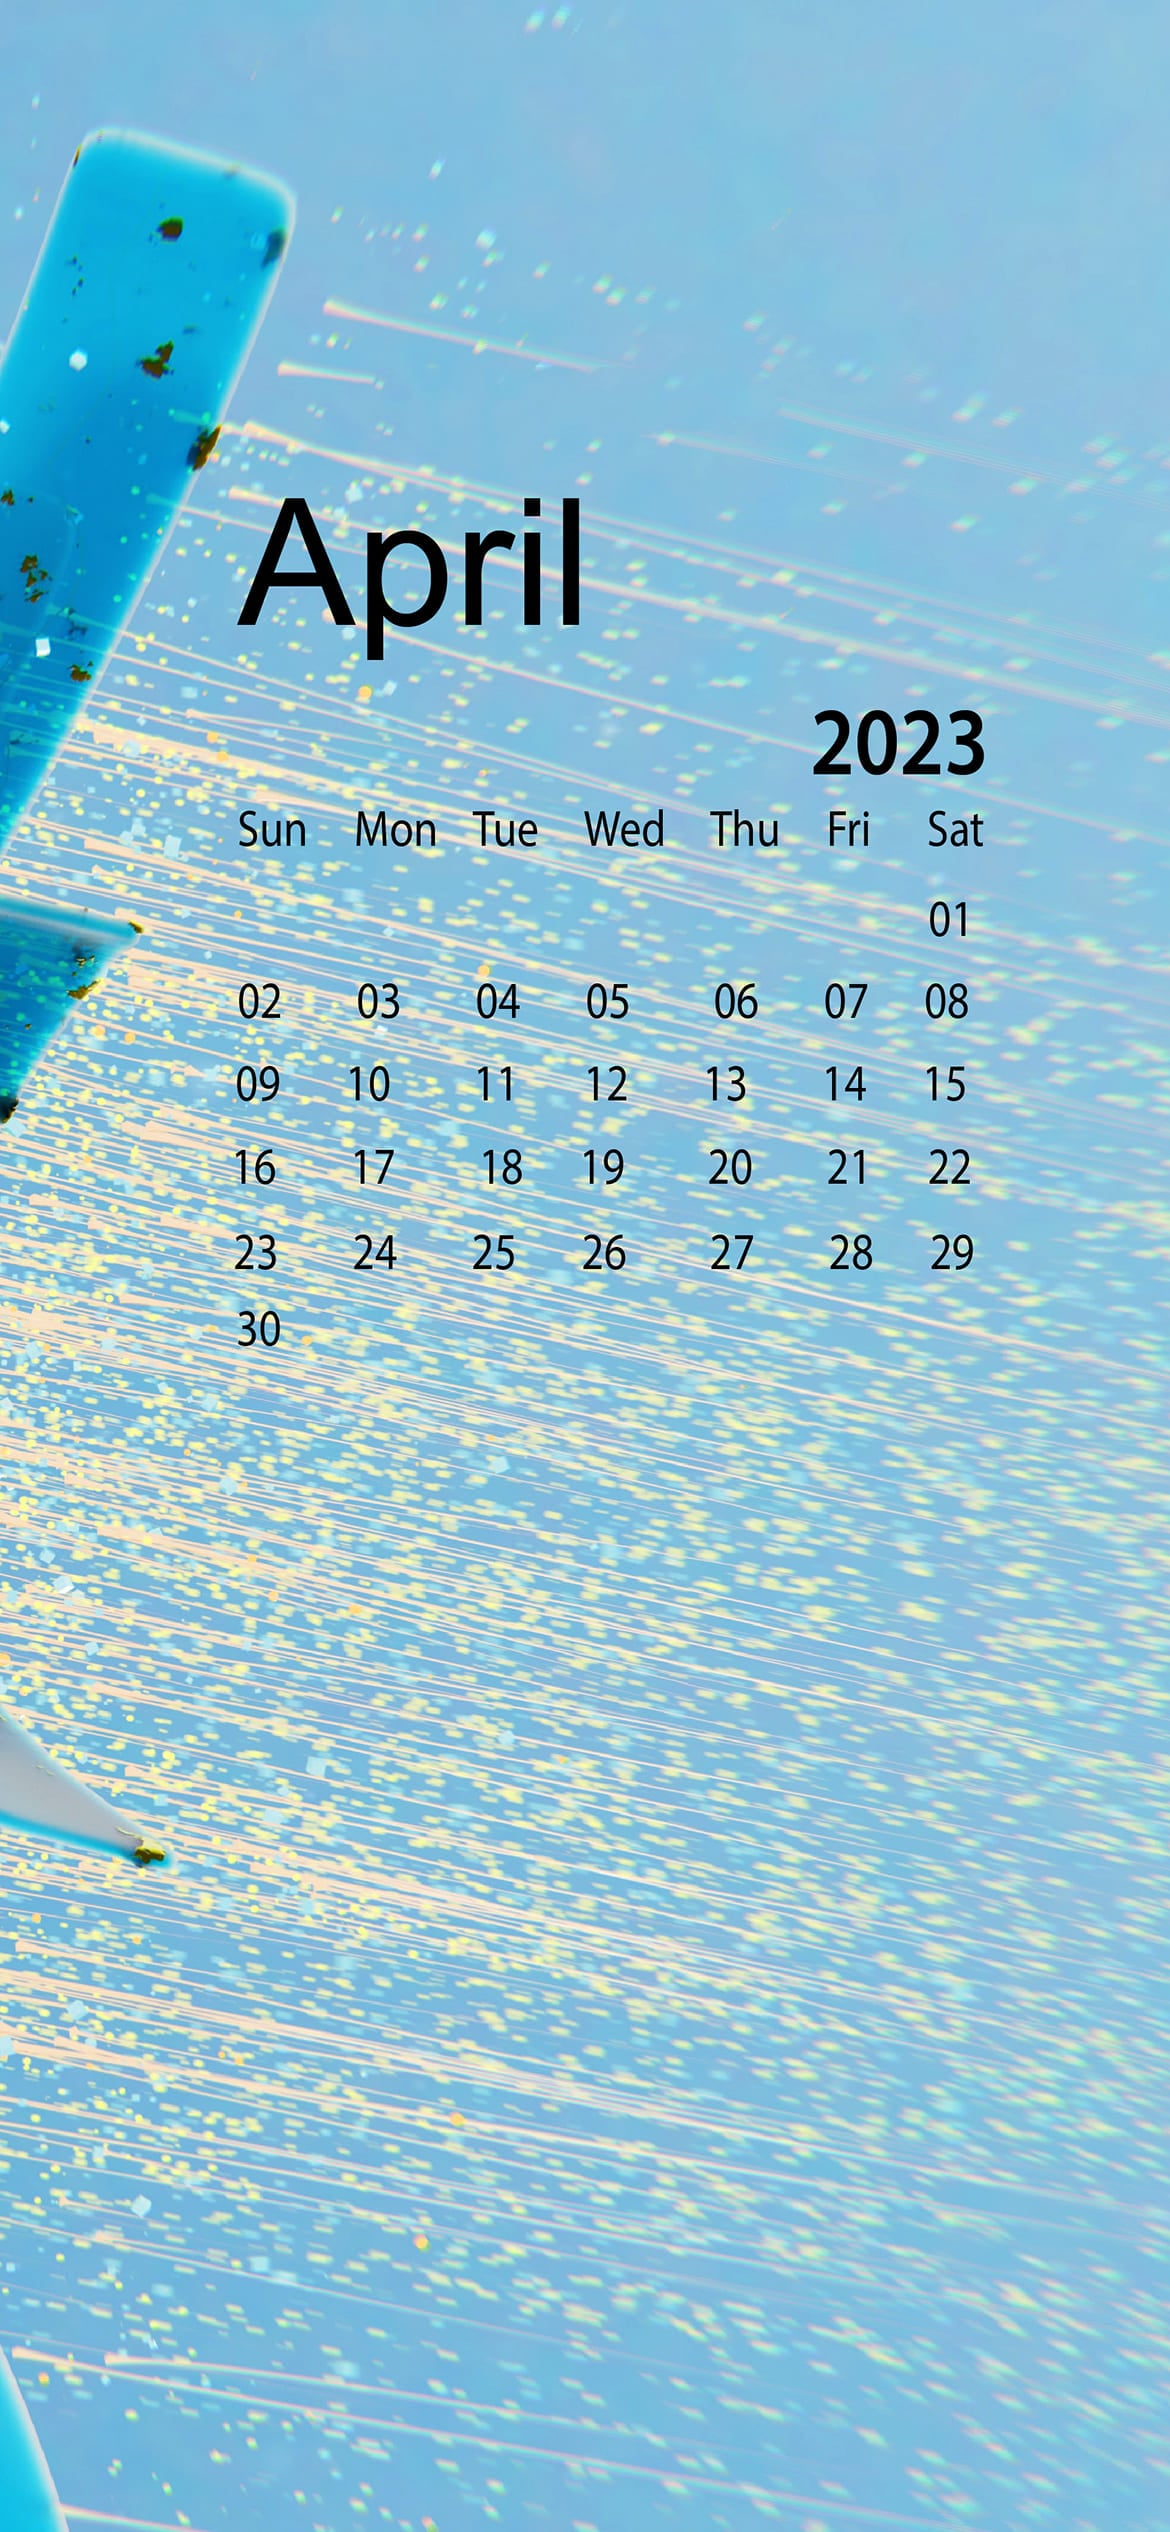 54 April 2020 Calendar Wallpapers  WallpaperSafari